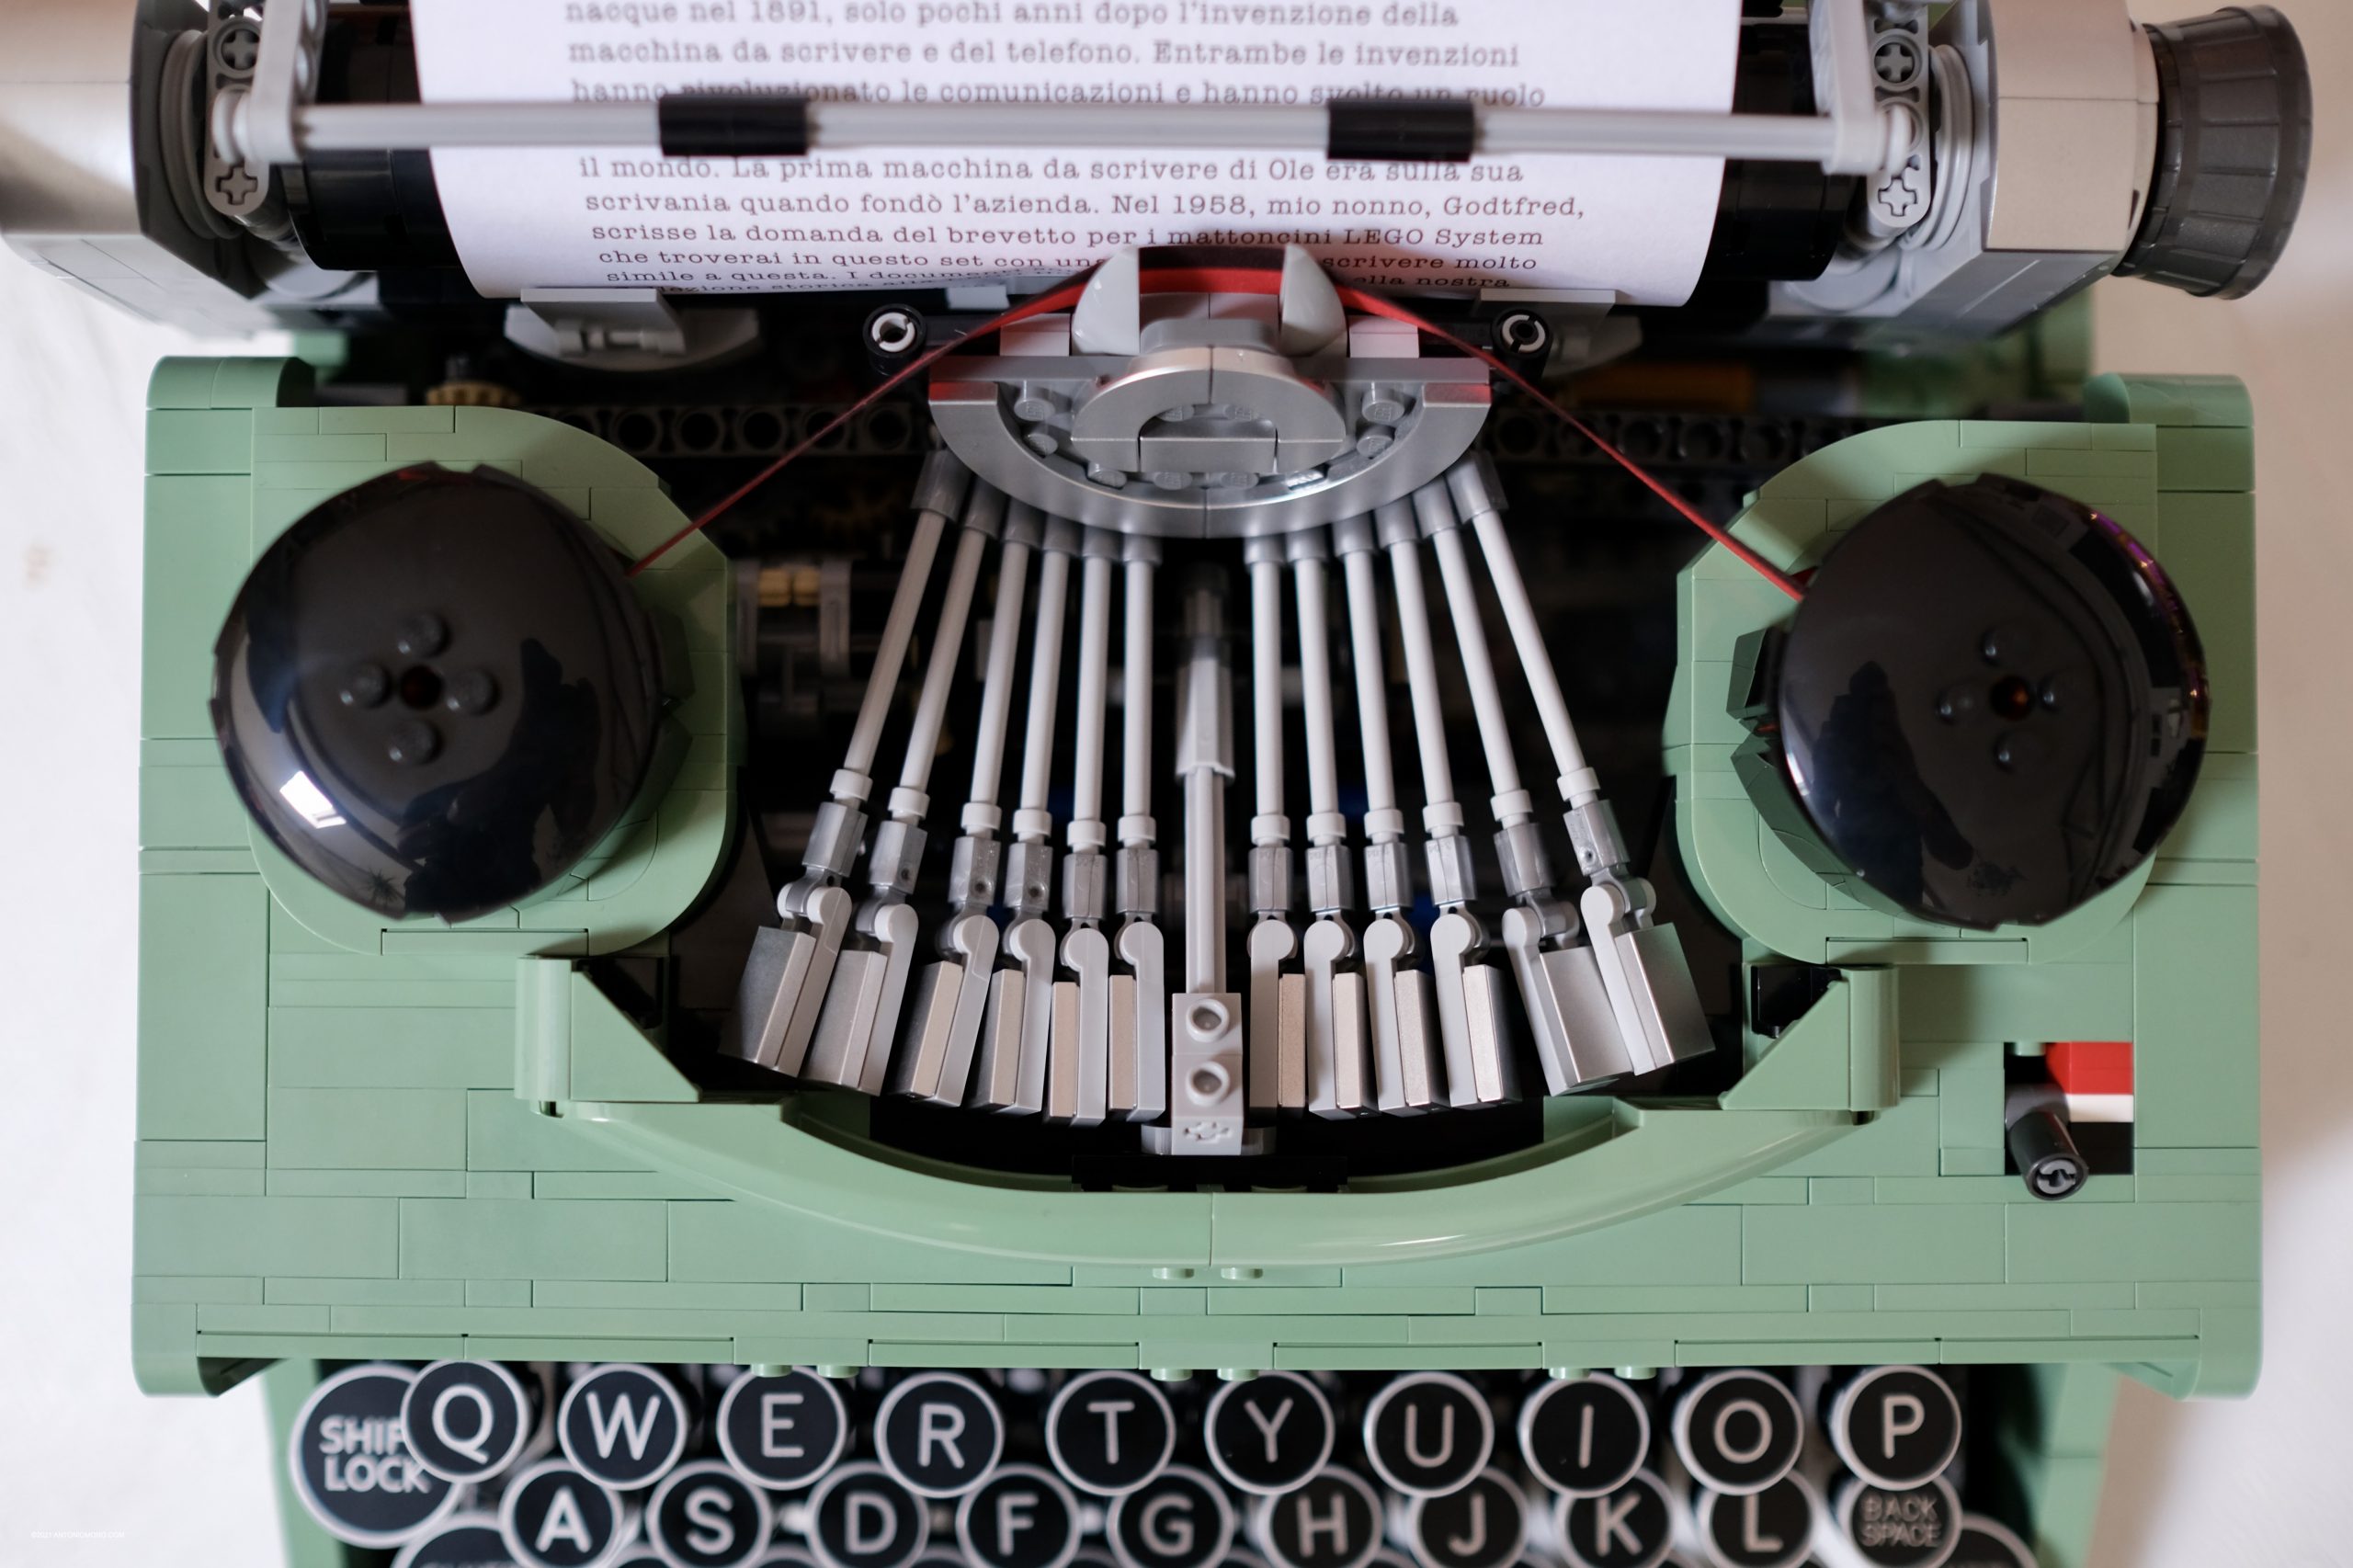 La macchina da scrivere di Lego che funziona davvero!